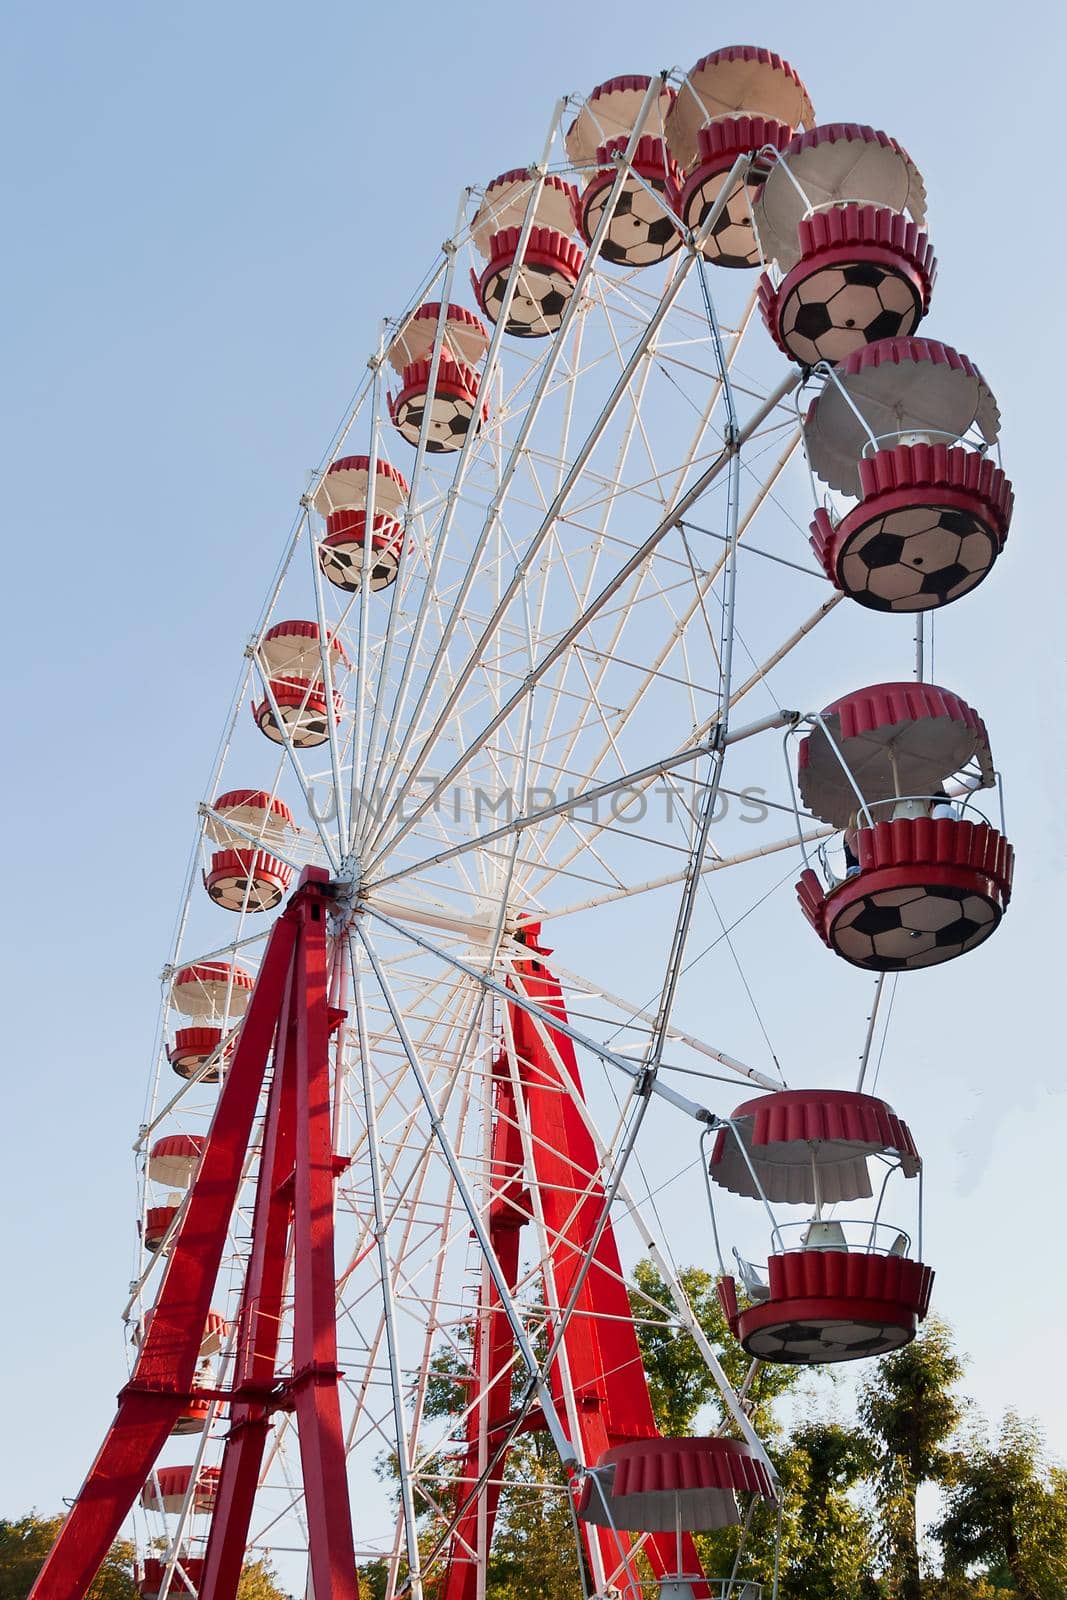 Ferris wheel on blue sky background by marketlan